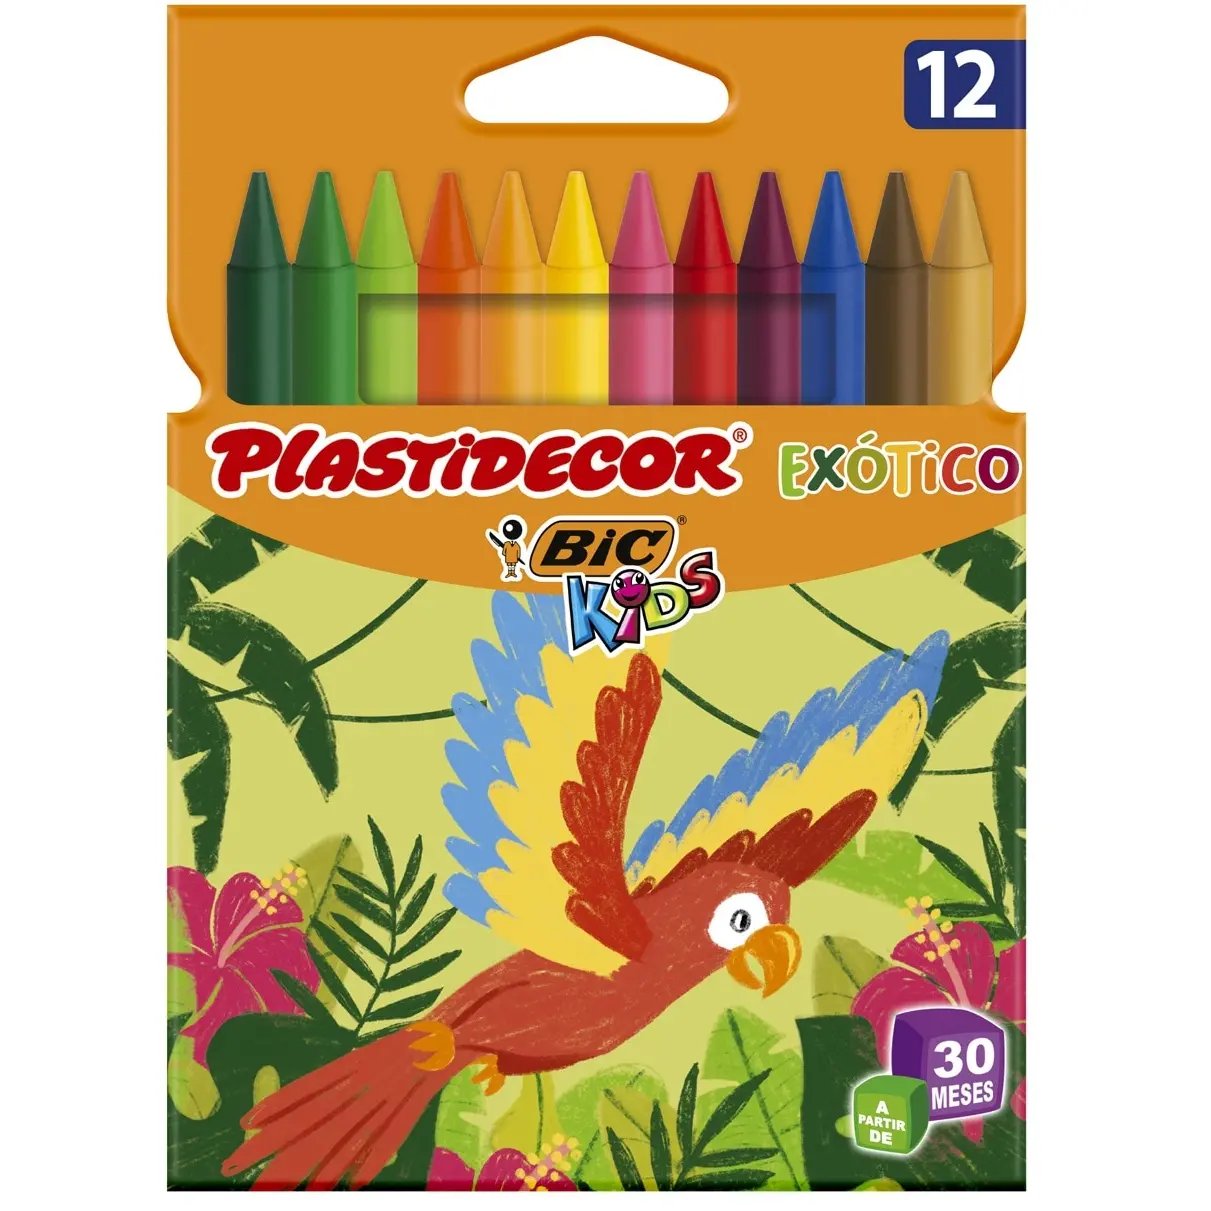 Bic Kids Plastidecor Caja de 12 Lapices de Cera - Colores Exoticos - Extraresistentes - Facil de Sac